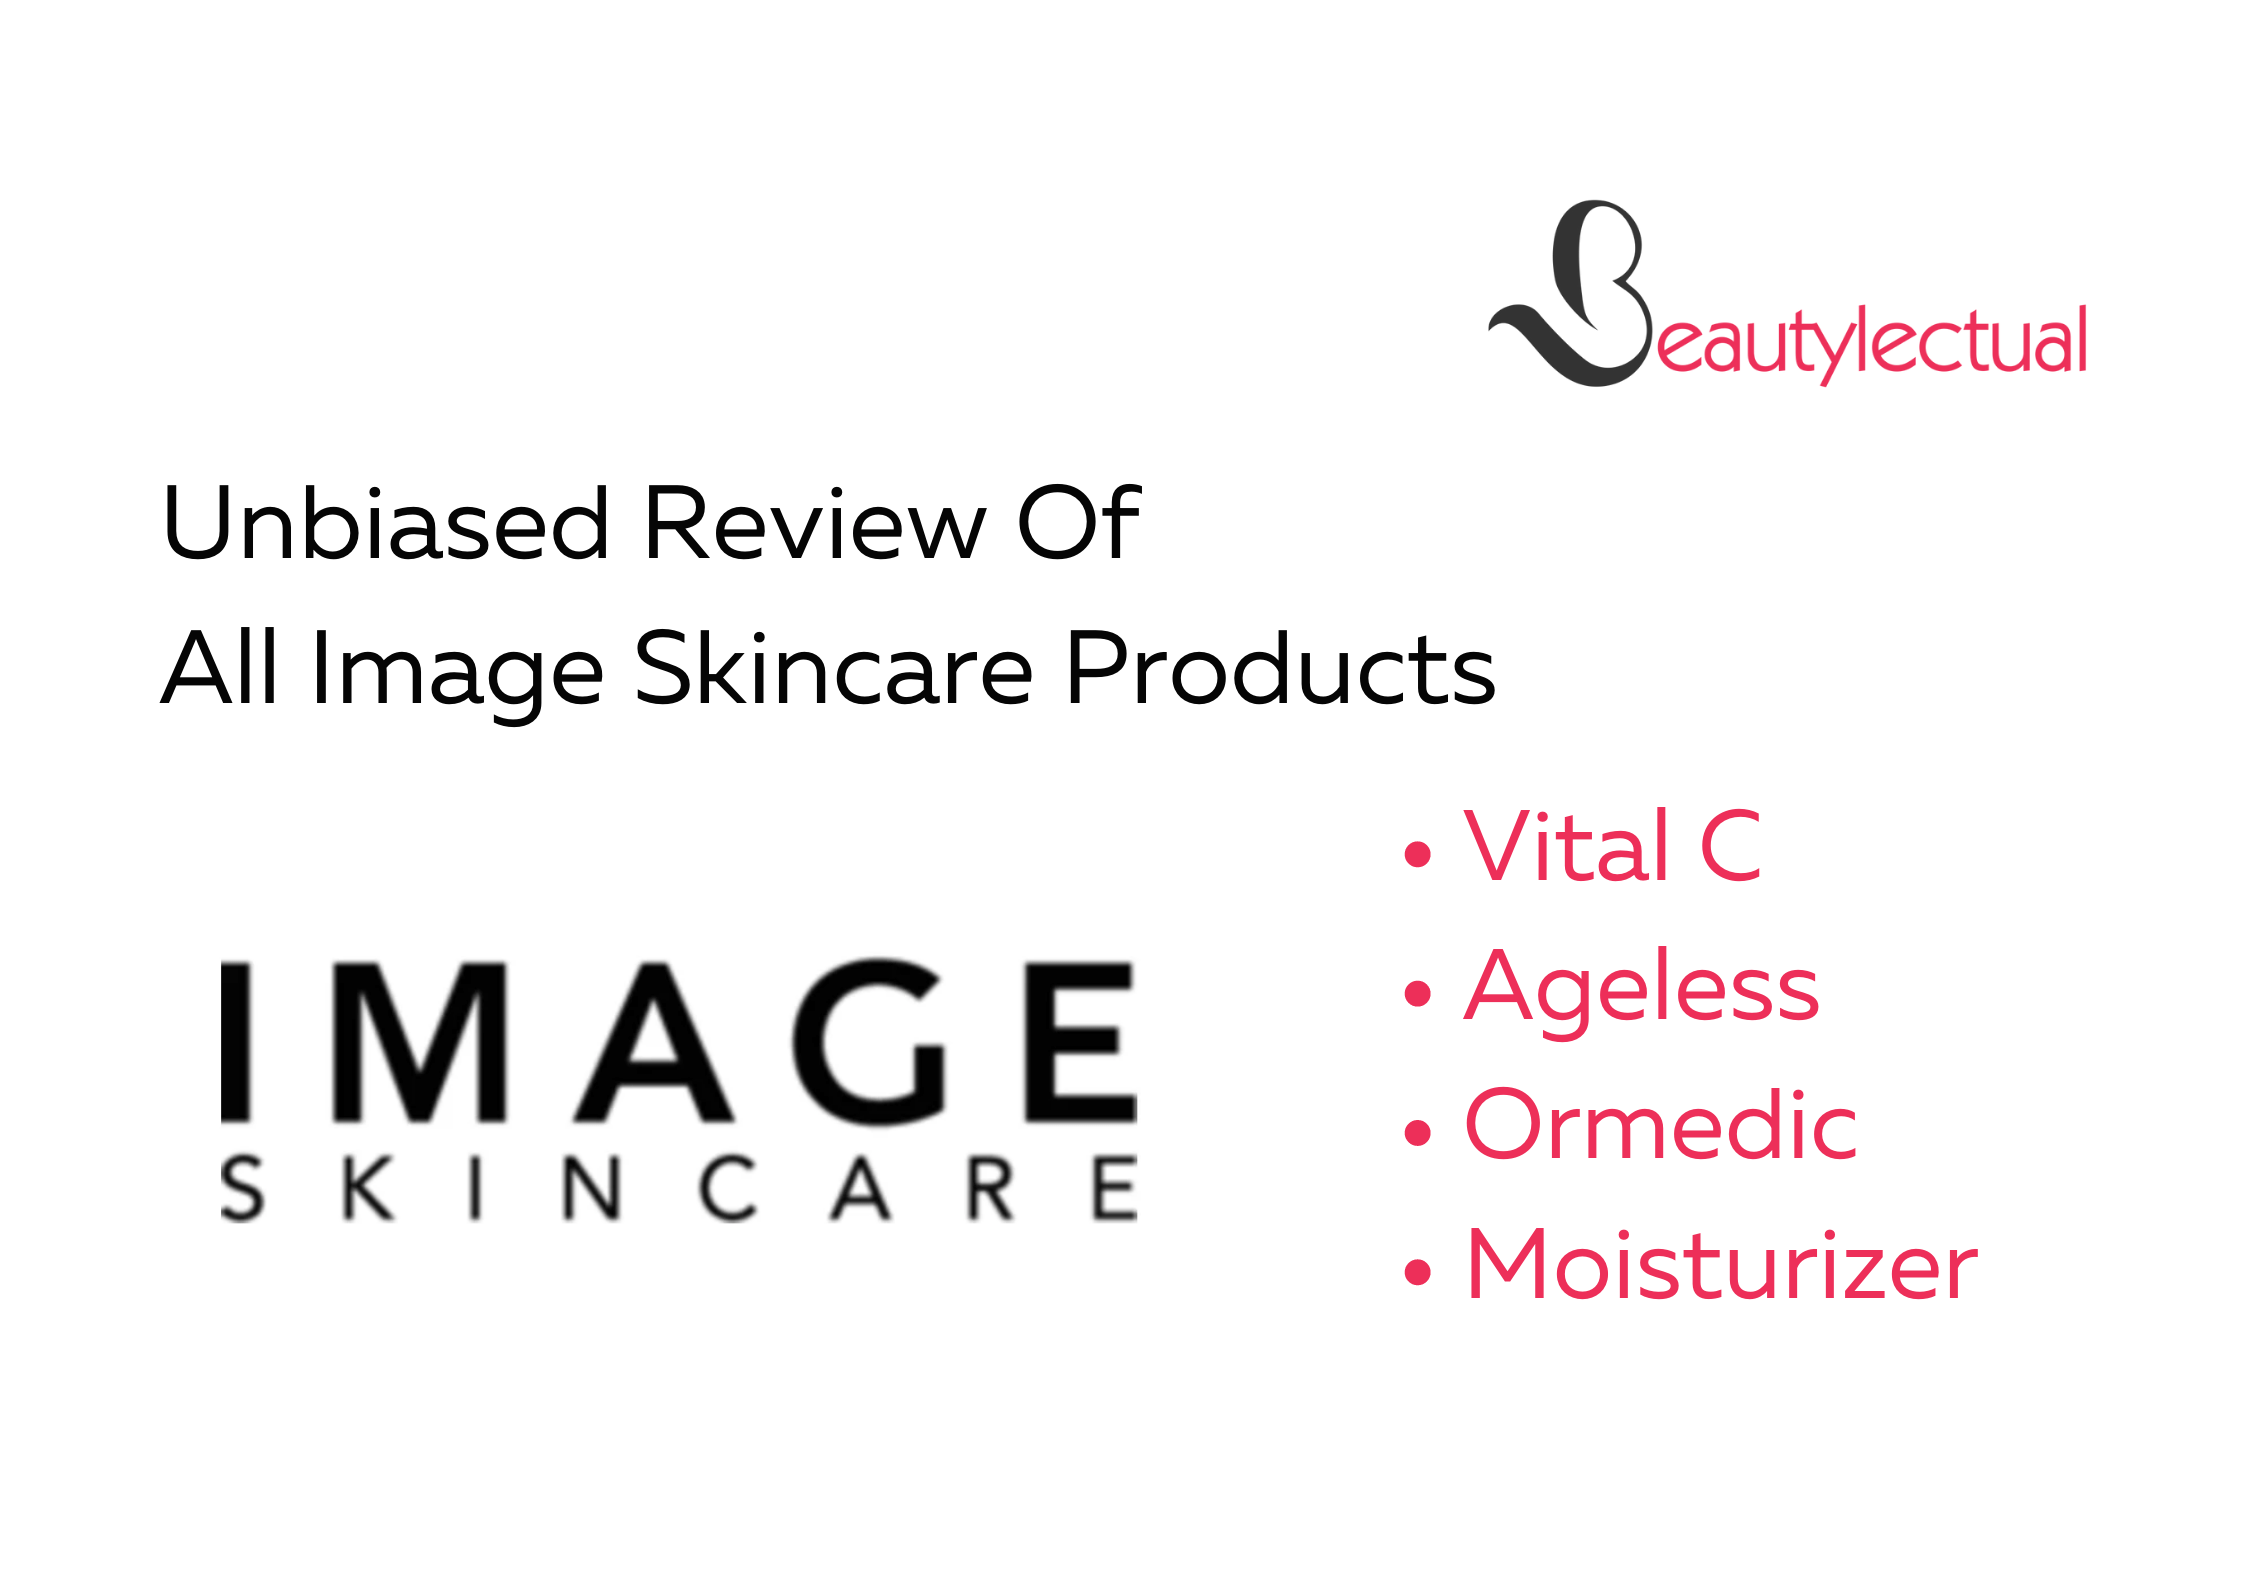 Image Skincare Reviews